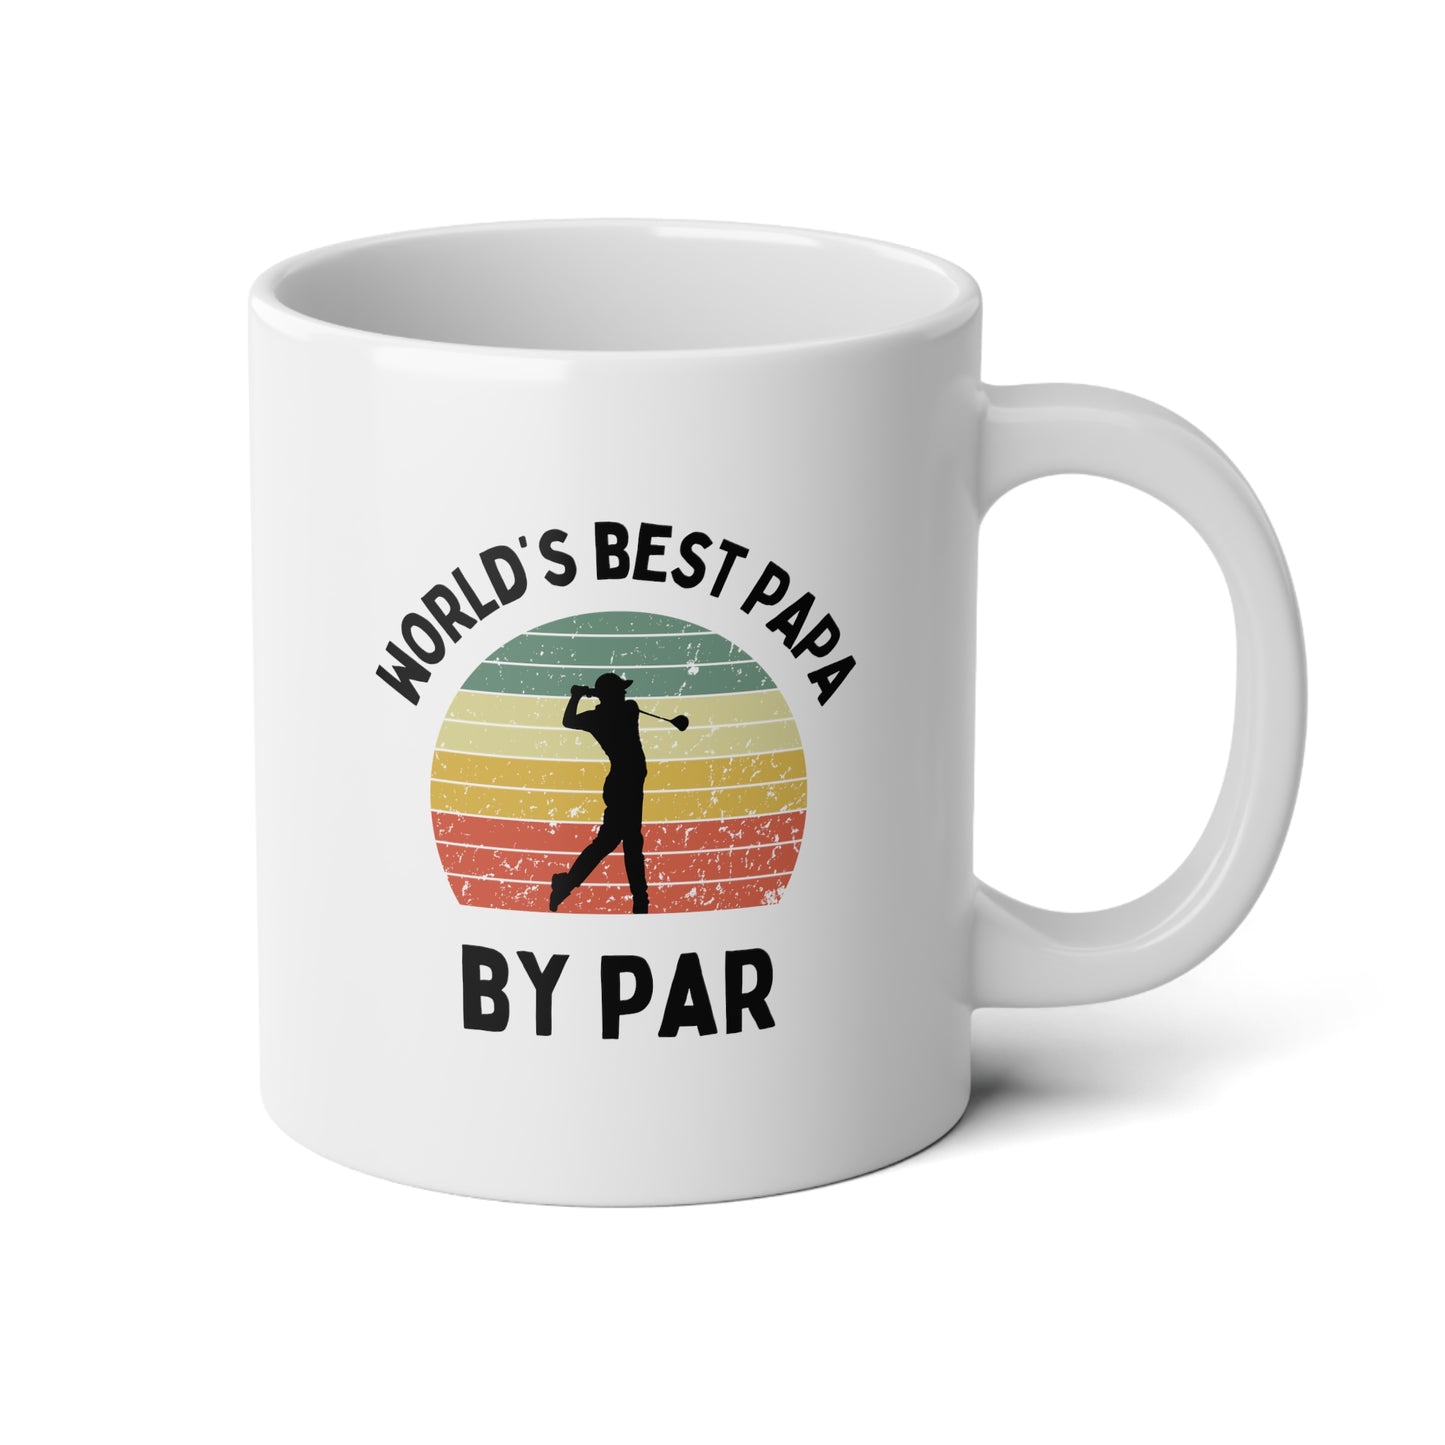 World's Best Papa By Par 20oz white funny large big coffee mug tea cup gift for him golfer vintage sunset golf men him grandad grandpa pops father's day waveywares wavey wares wavywares wavy wares